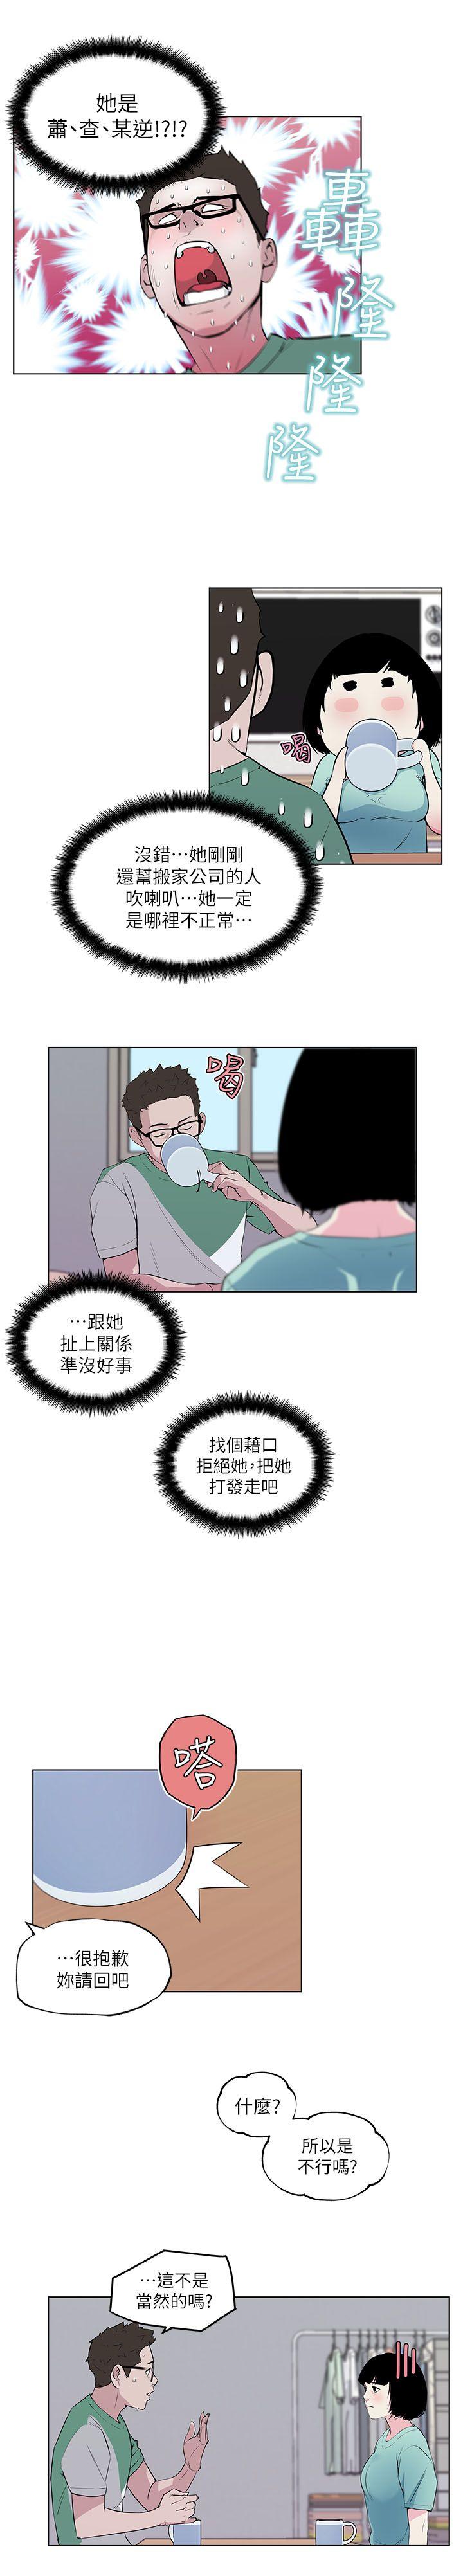 韩国污漫画 打開她的苞 第5话 6